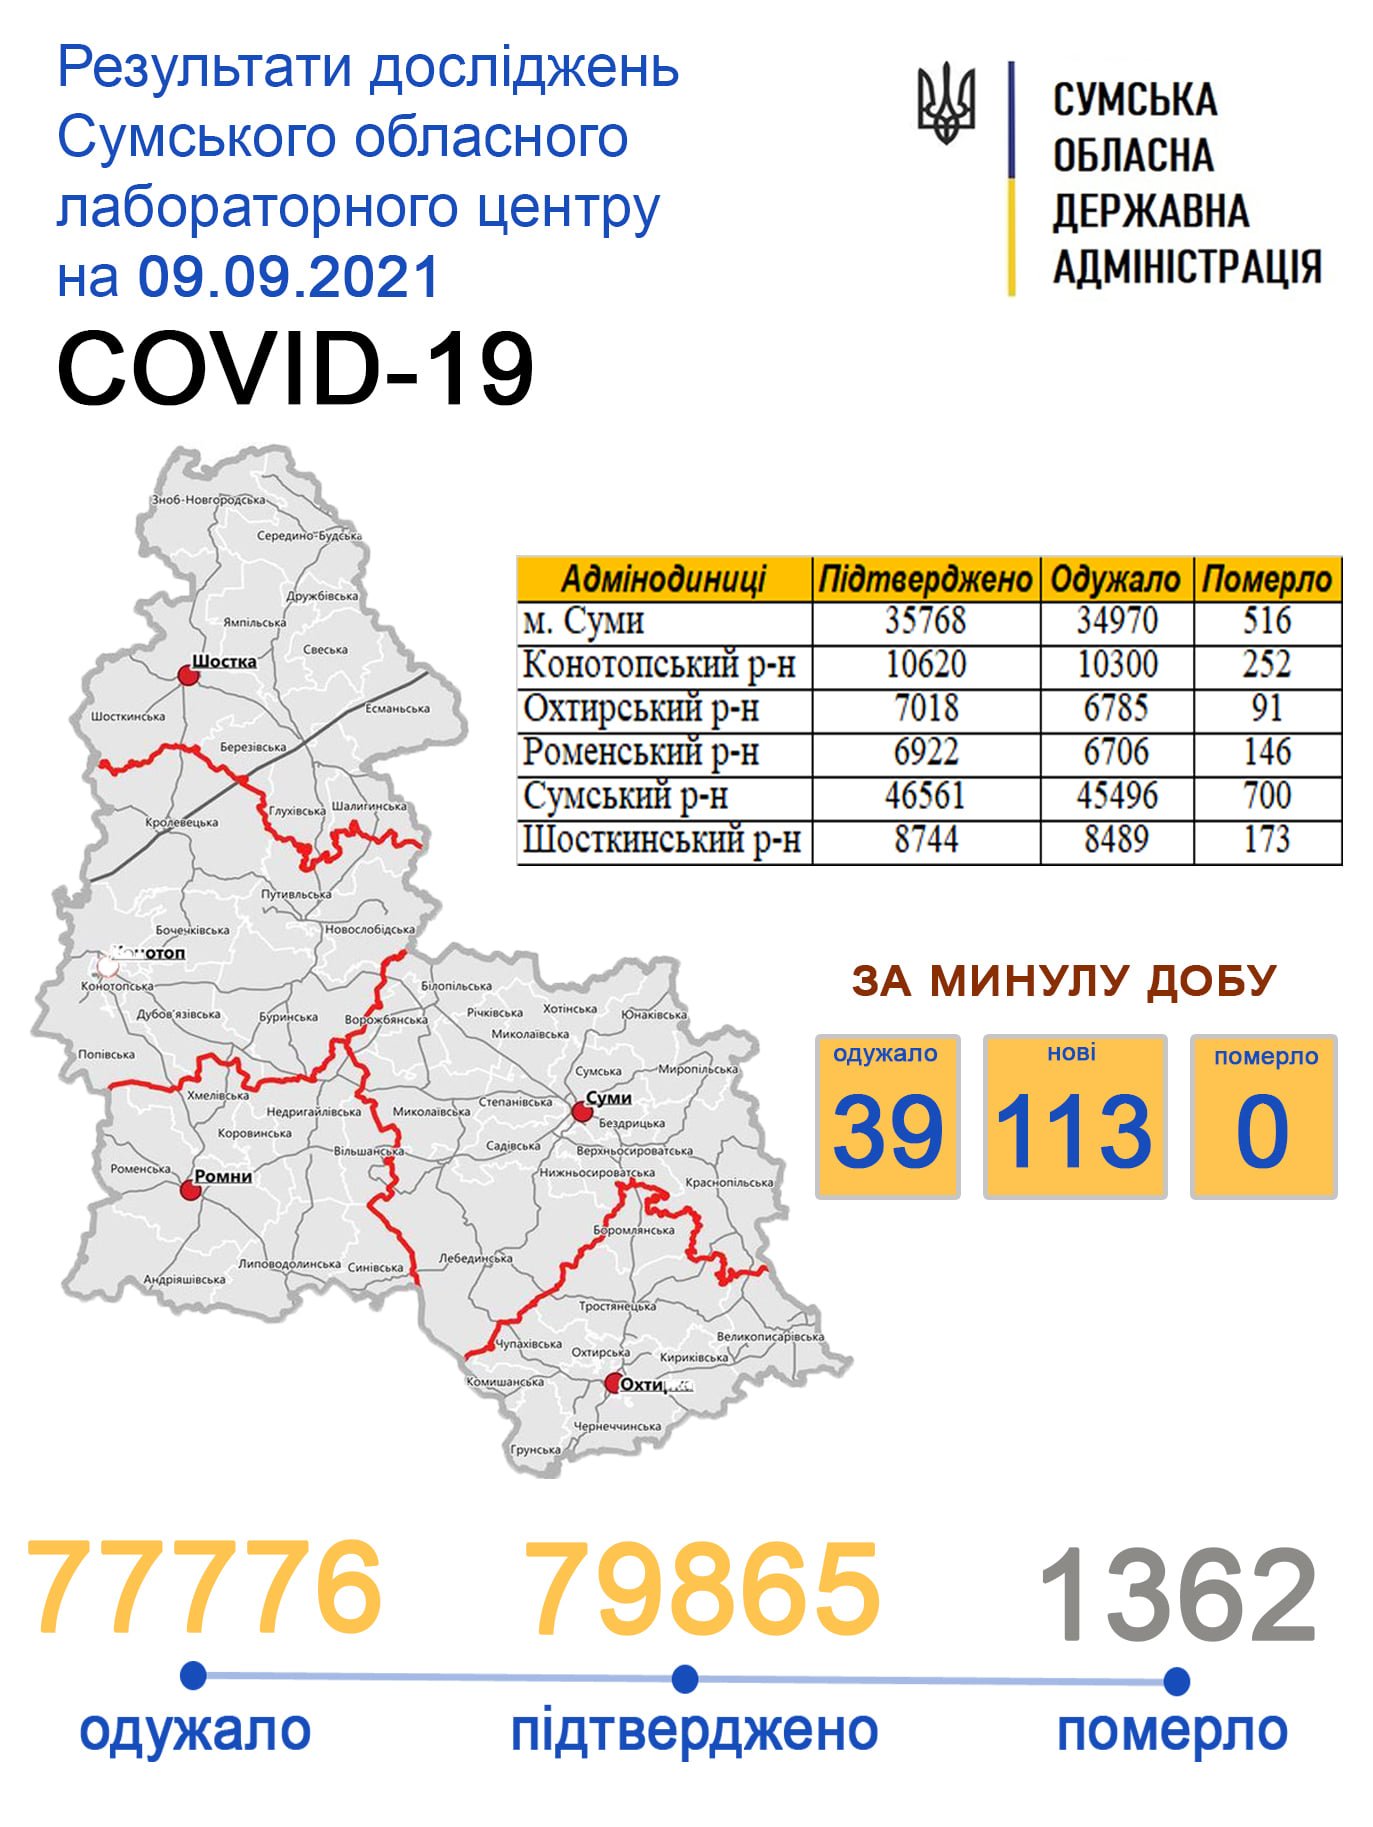     covid-19  113  